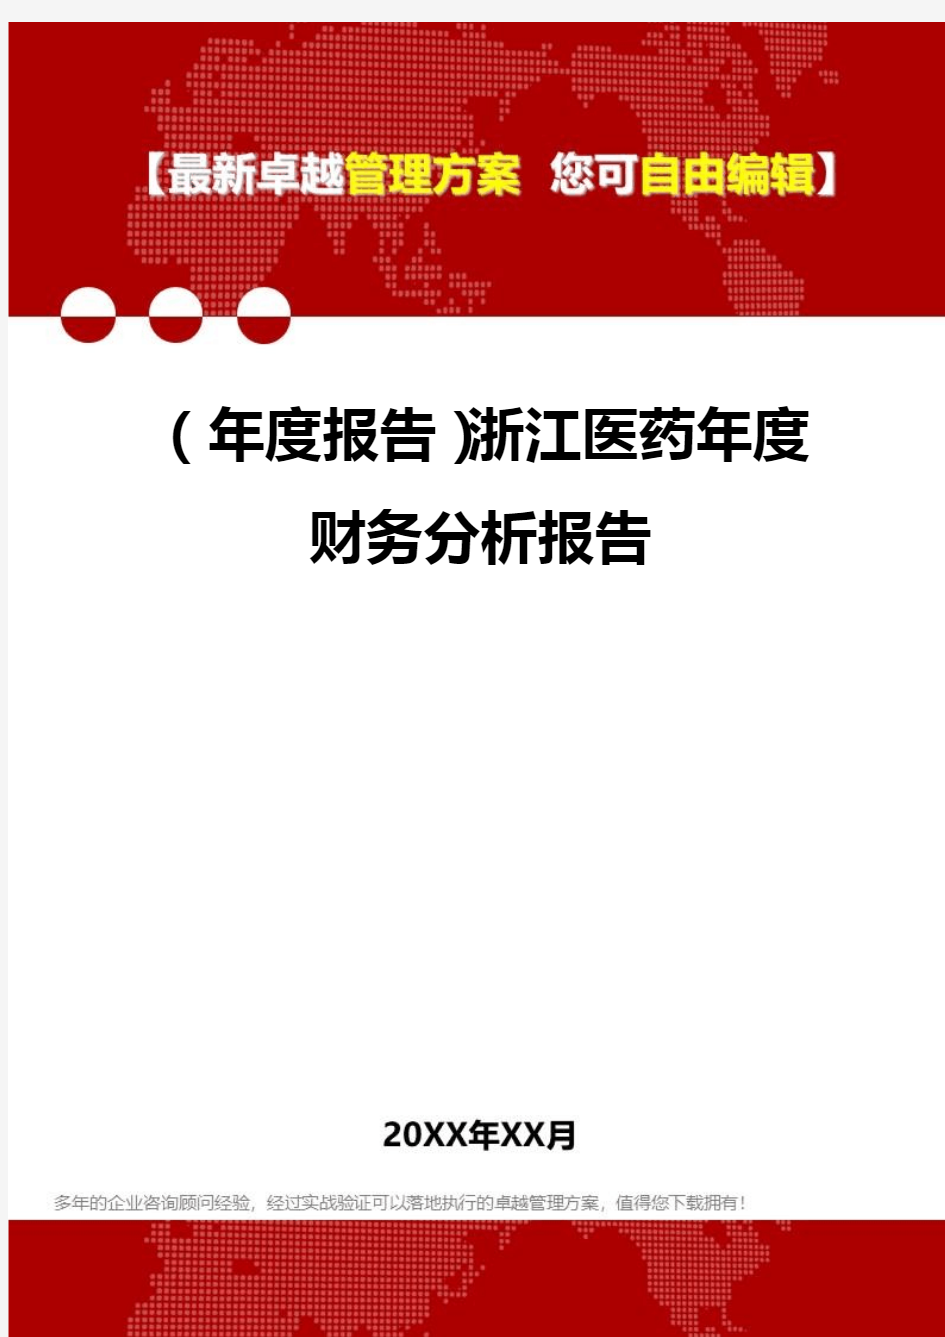 2020年(年度报告)浙江医药年度财务分析报告